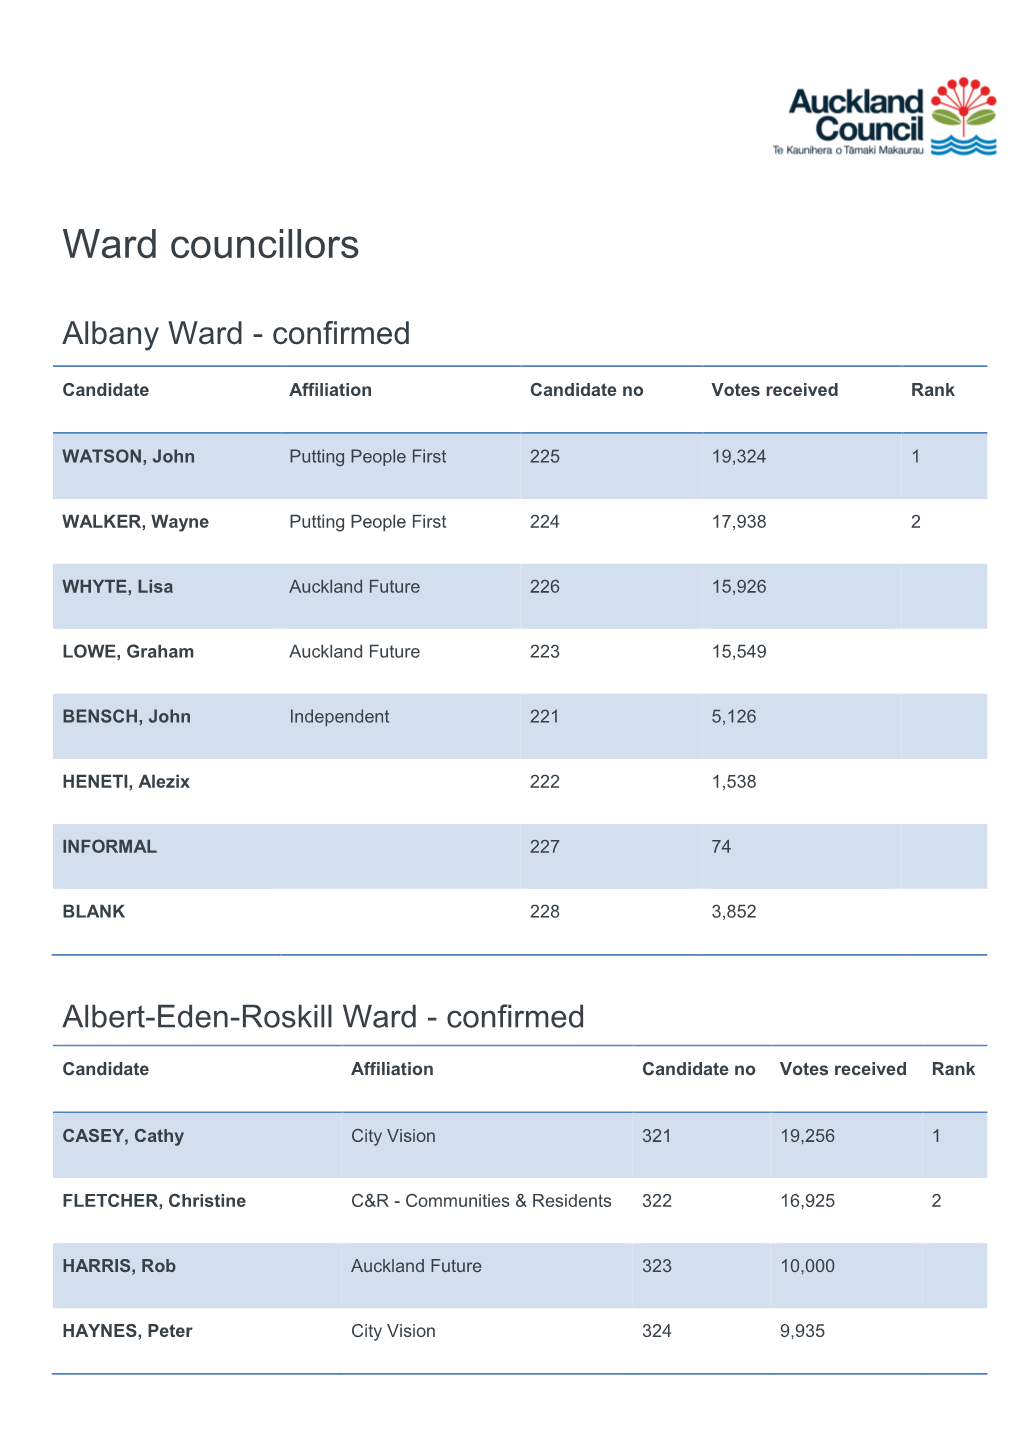 Ward Councillors